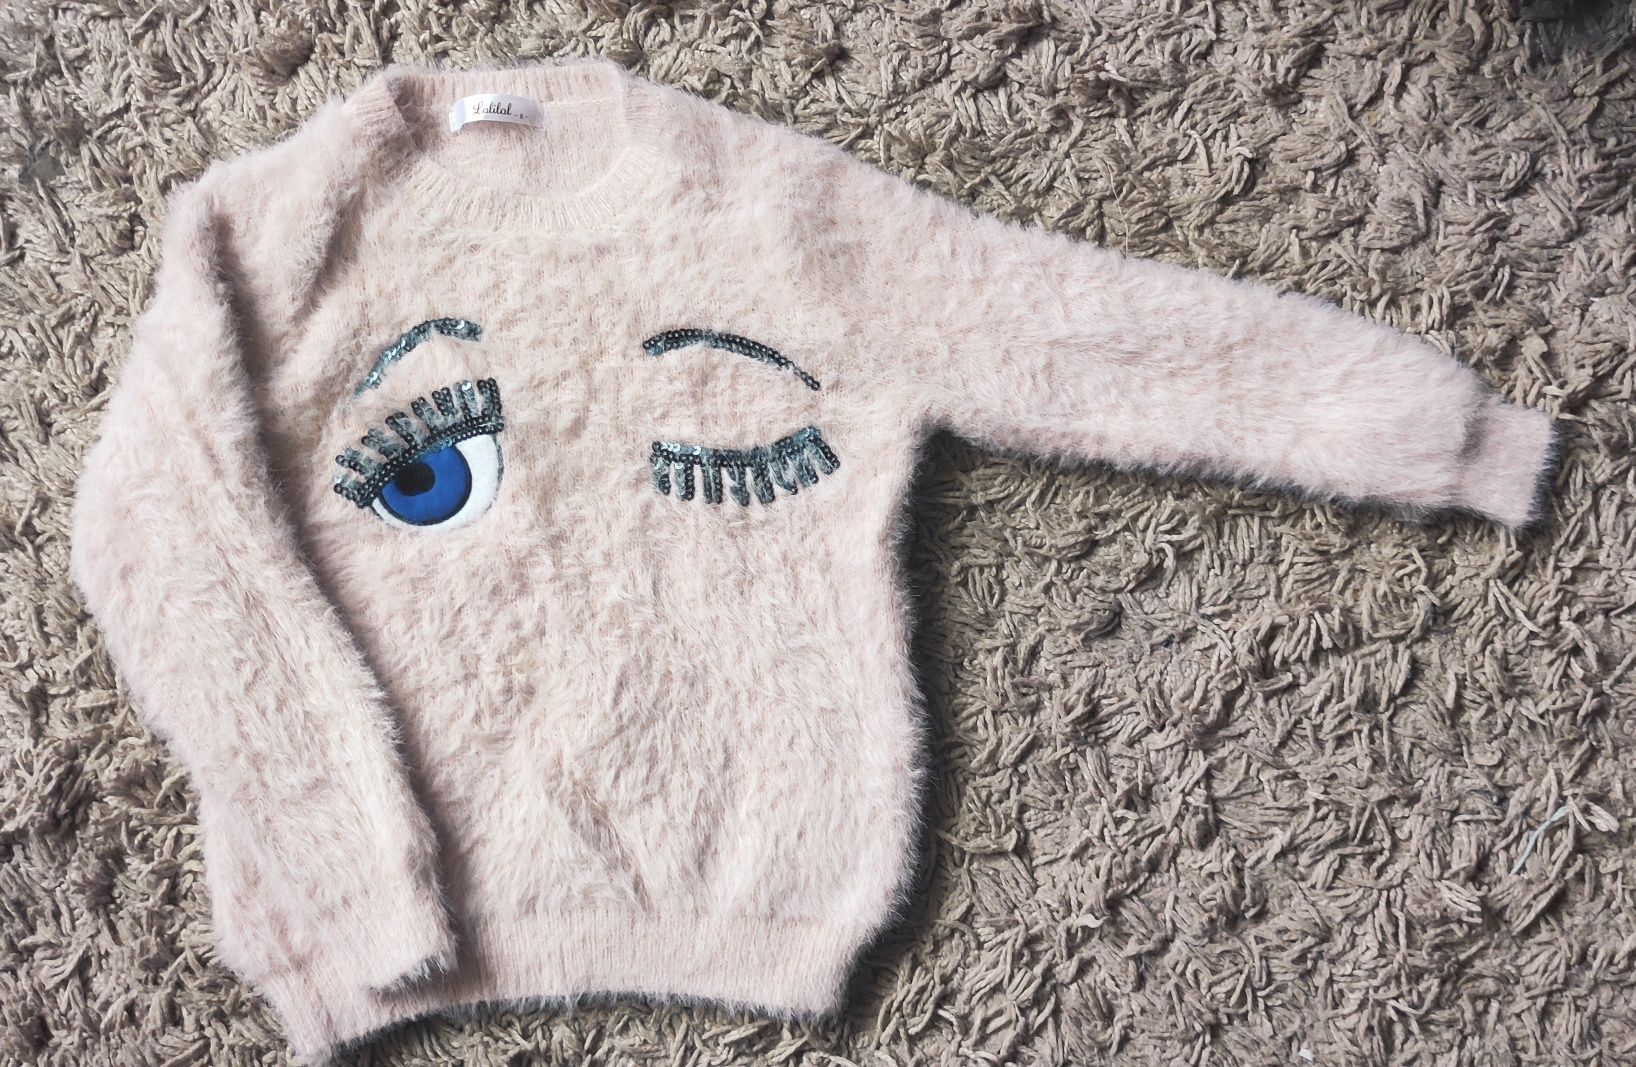 Włochaty różowy sweterek dla dziewczynki 128cm

Stan bardzo dobry

Dłu